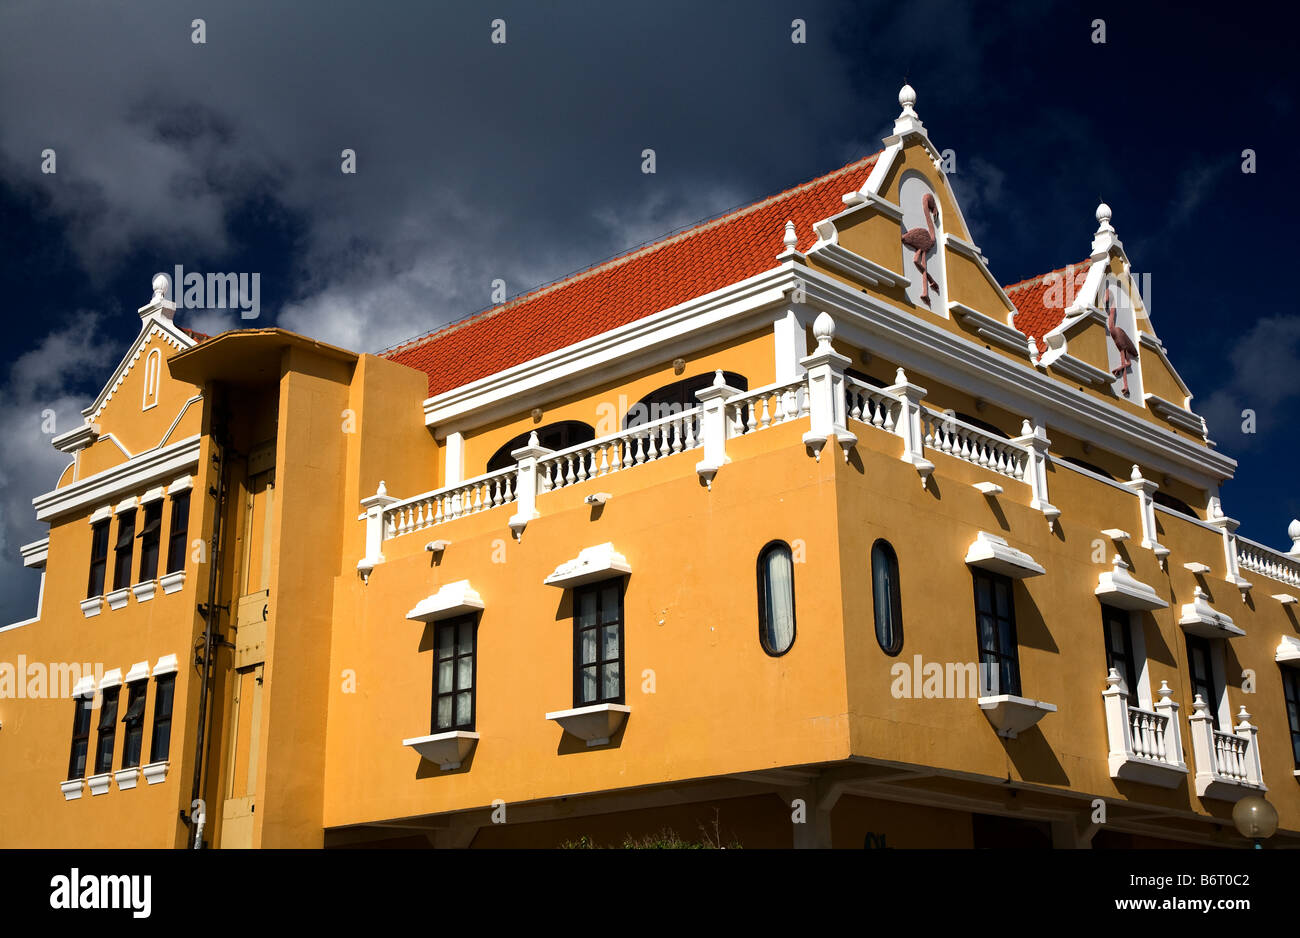 Kralendijk town and capital of Bonaire Stock Photo